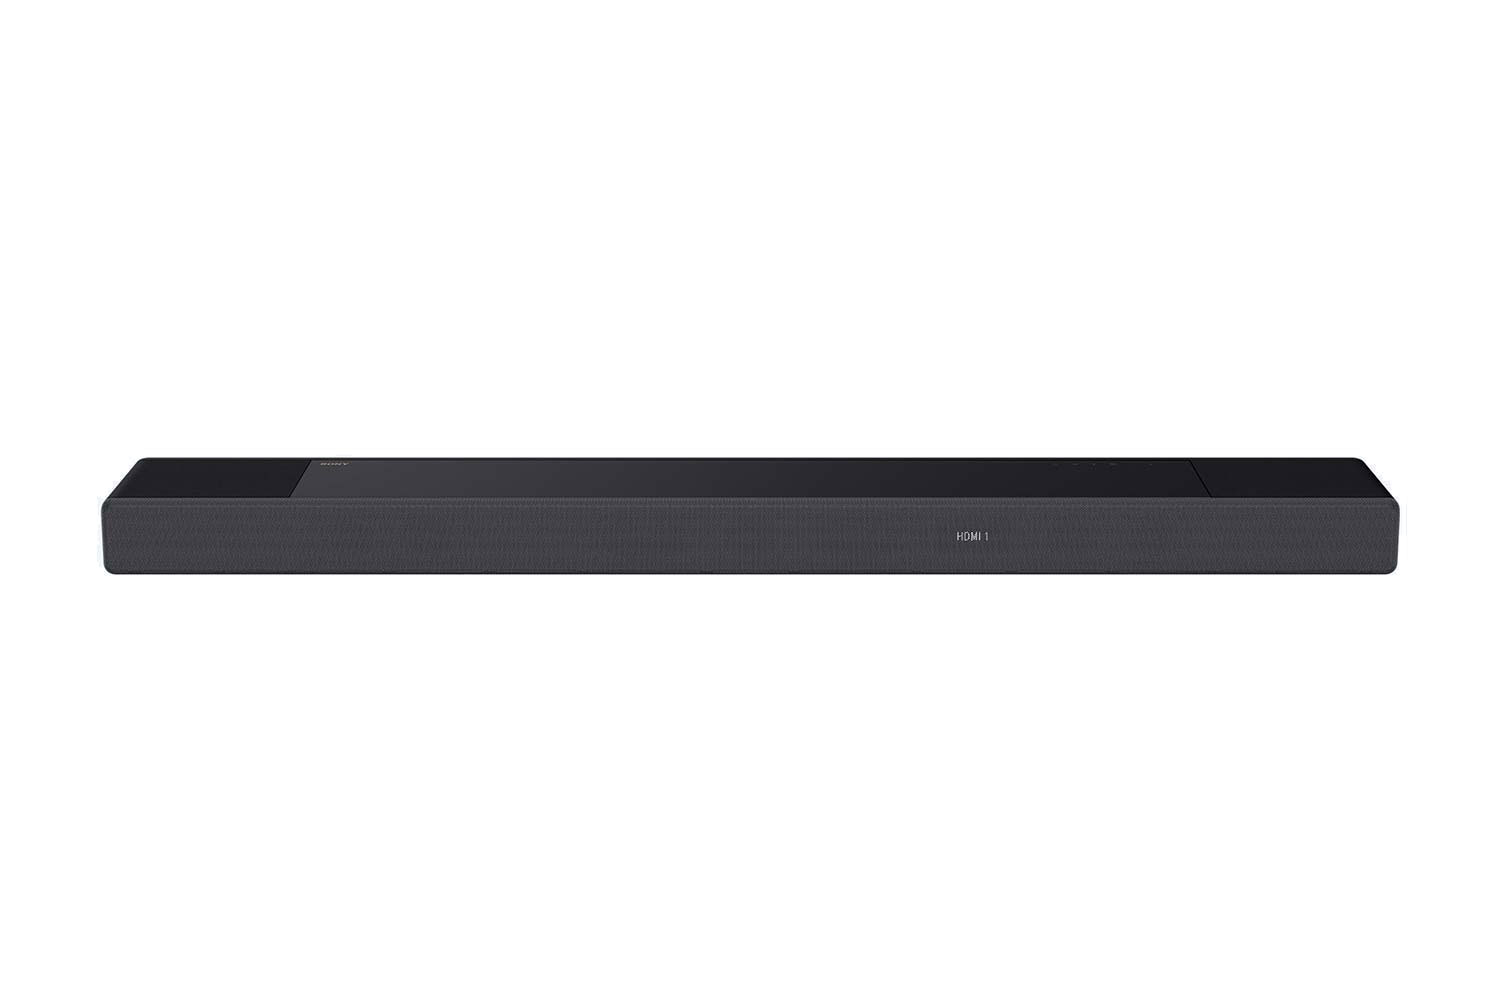 Sony HT-A7000 Soundbar front - slide